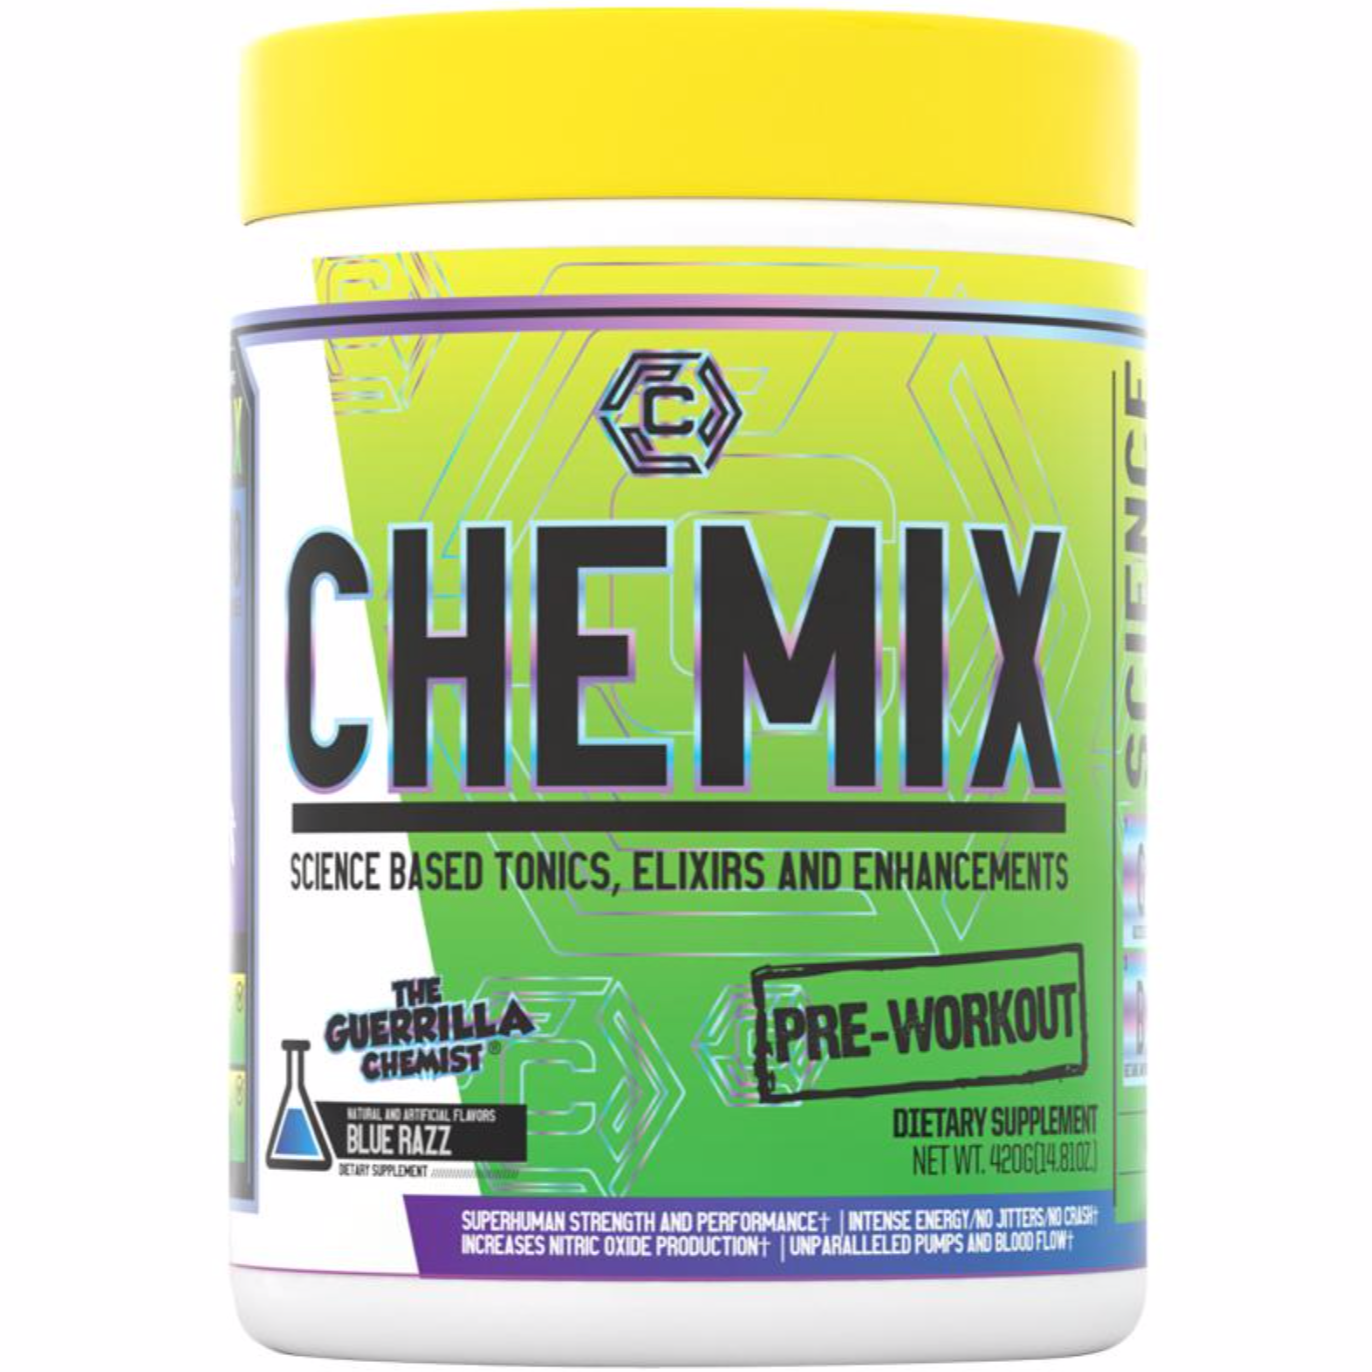 Chemix Pre-Workout V3